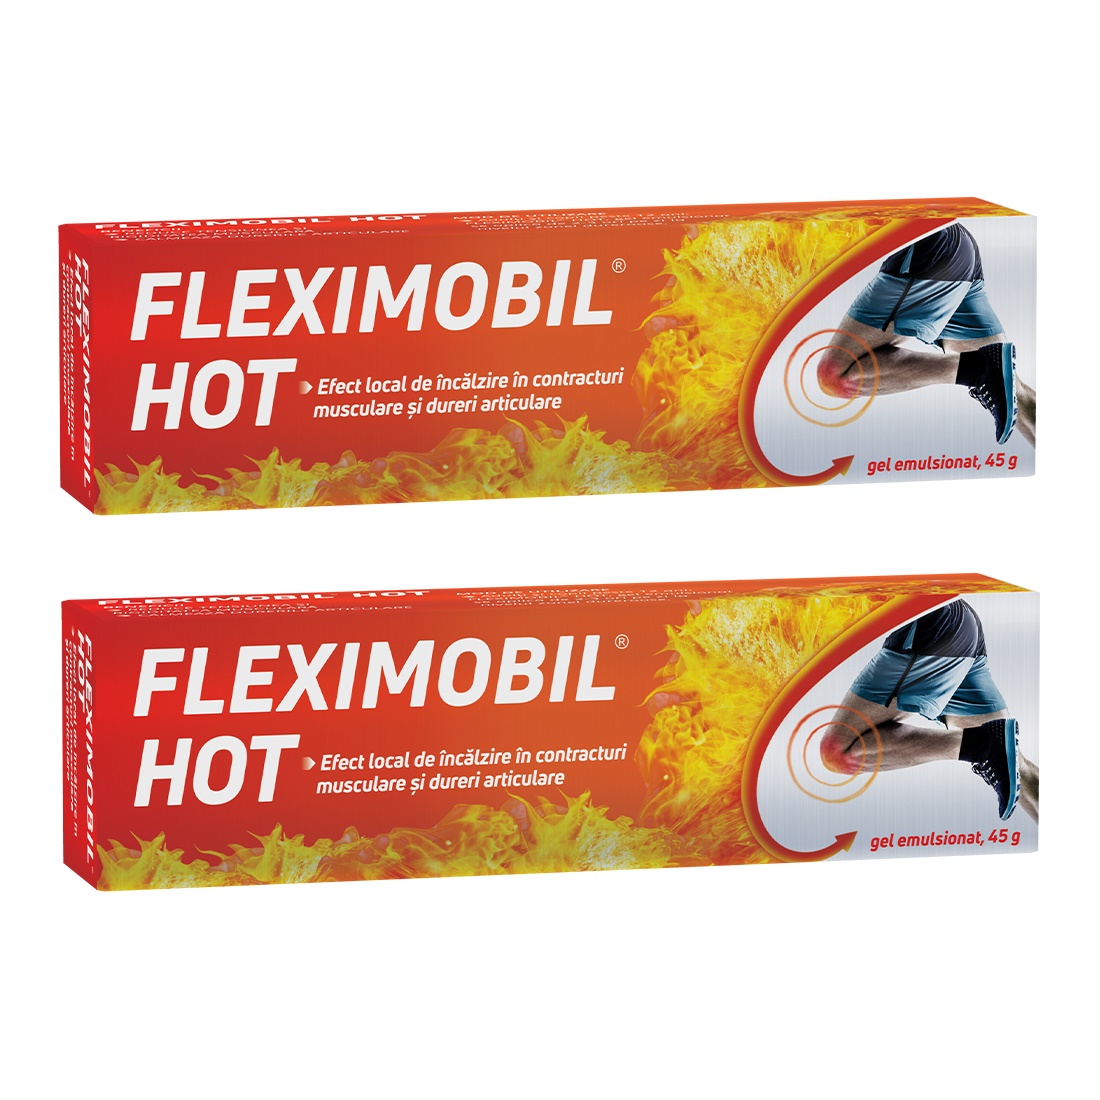 Fleximobil Ice gel, 45 g, Fiterman Pharma